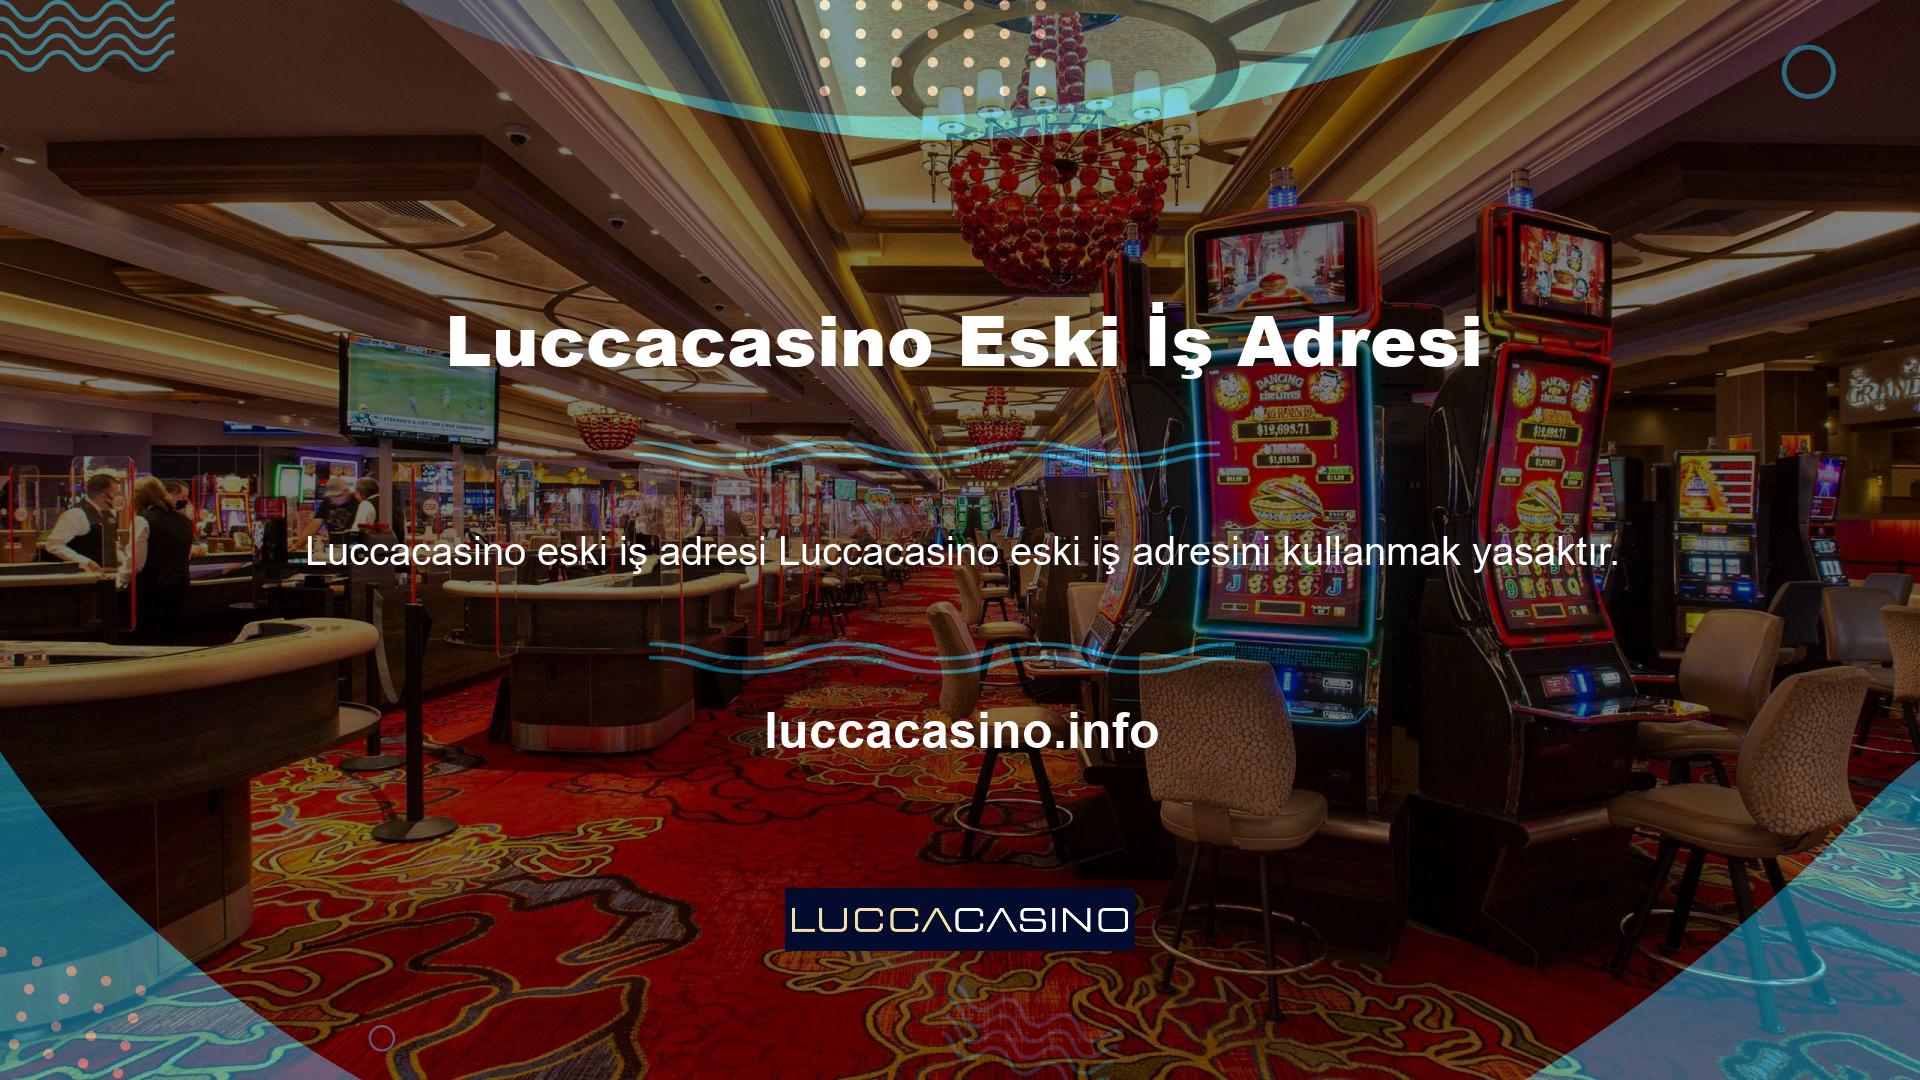 Mevcut adresin “Luccacasino” olduğu ortaya çıktı